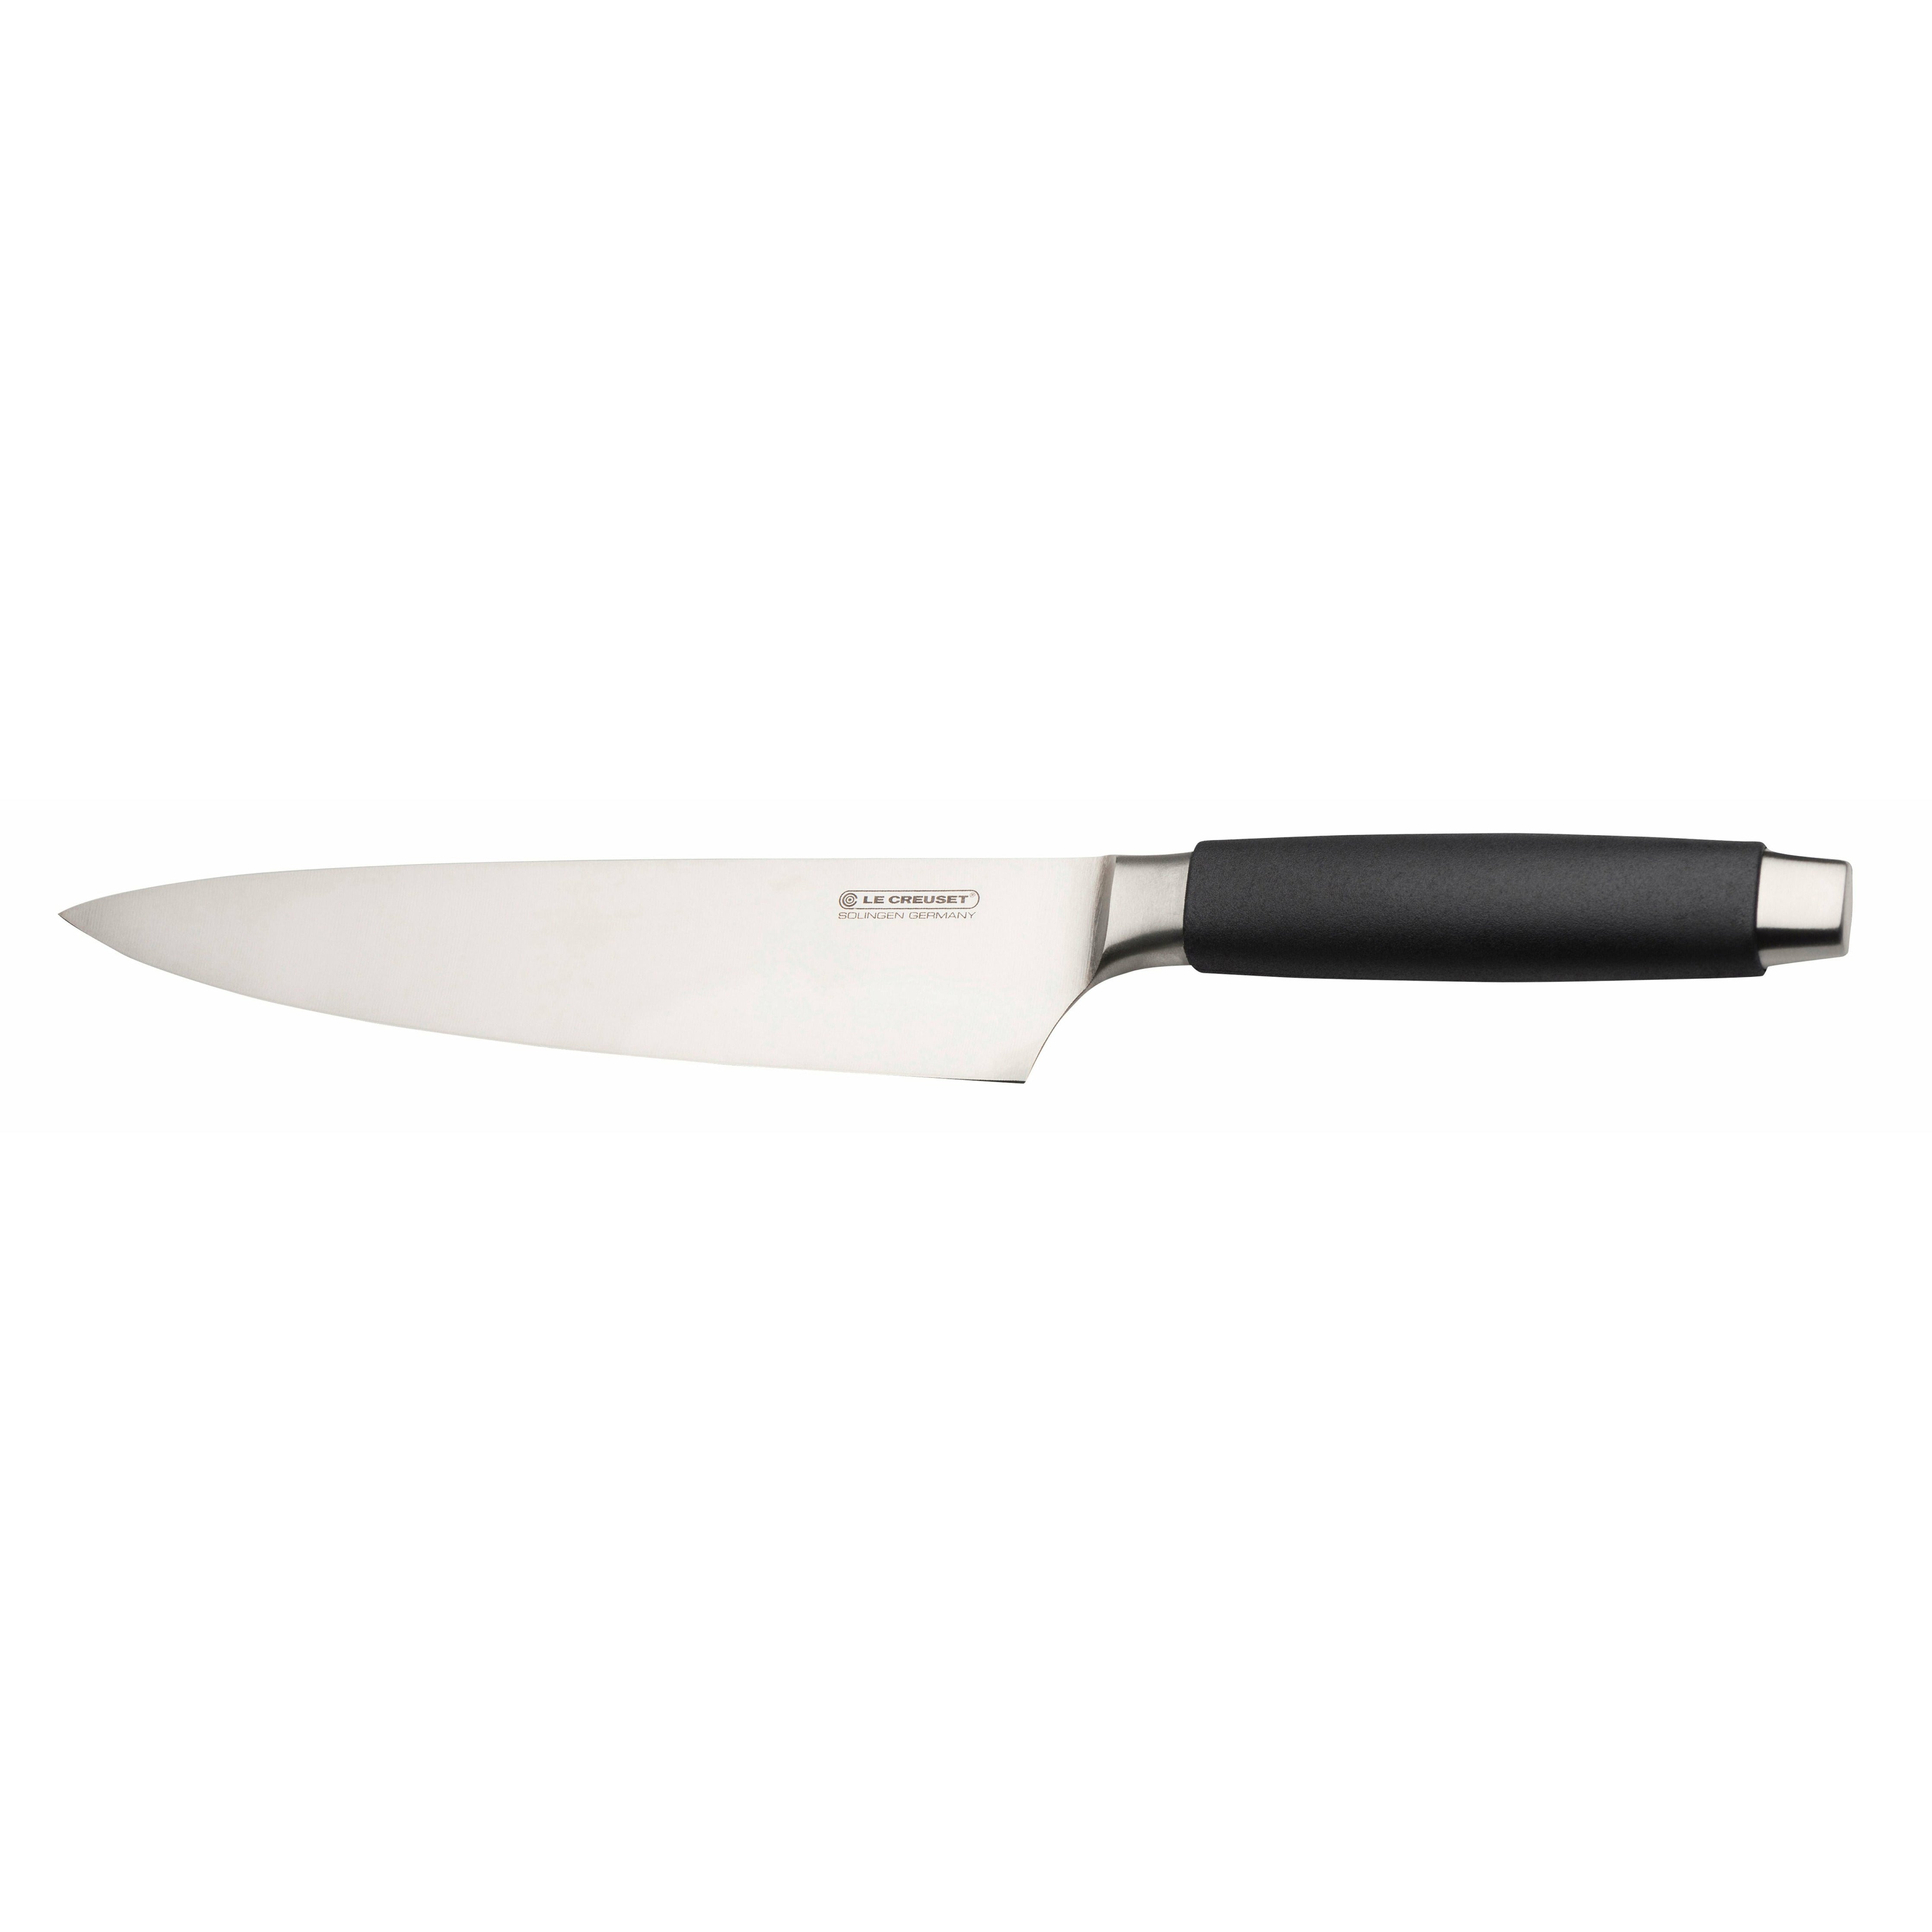 Le Creuset Kockens knivstandard med svart handtag, 20 cm